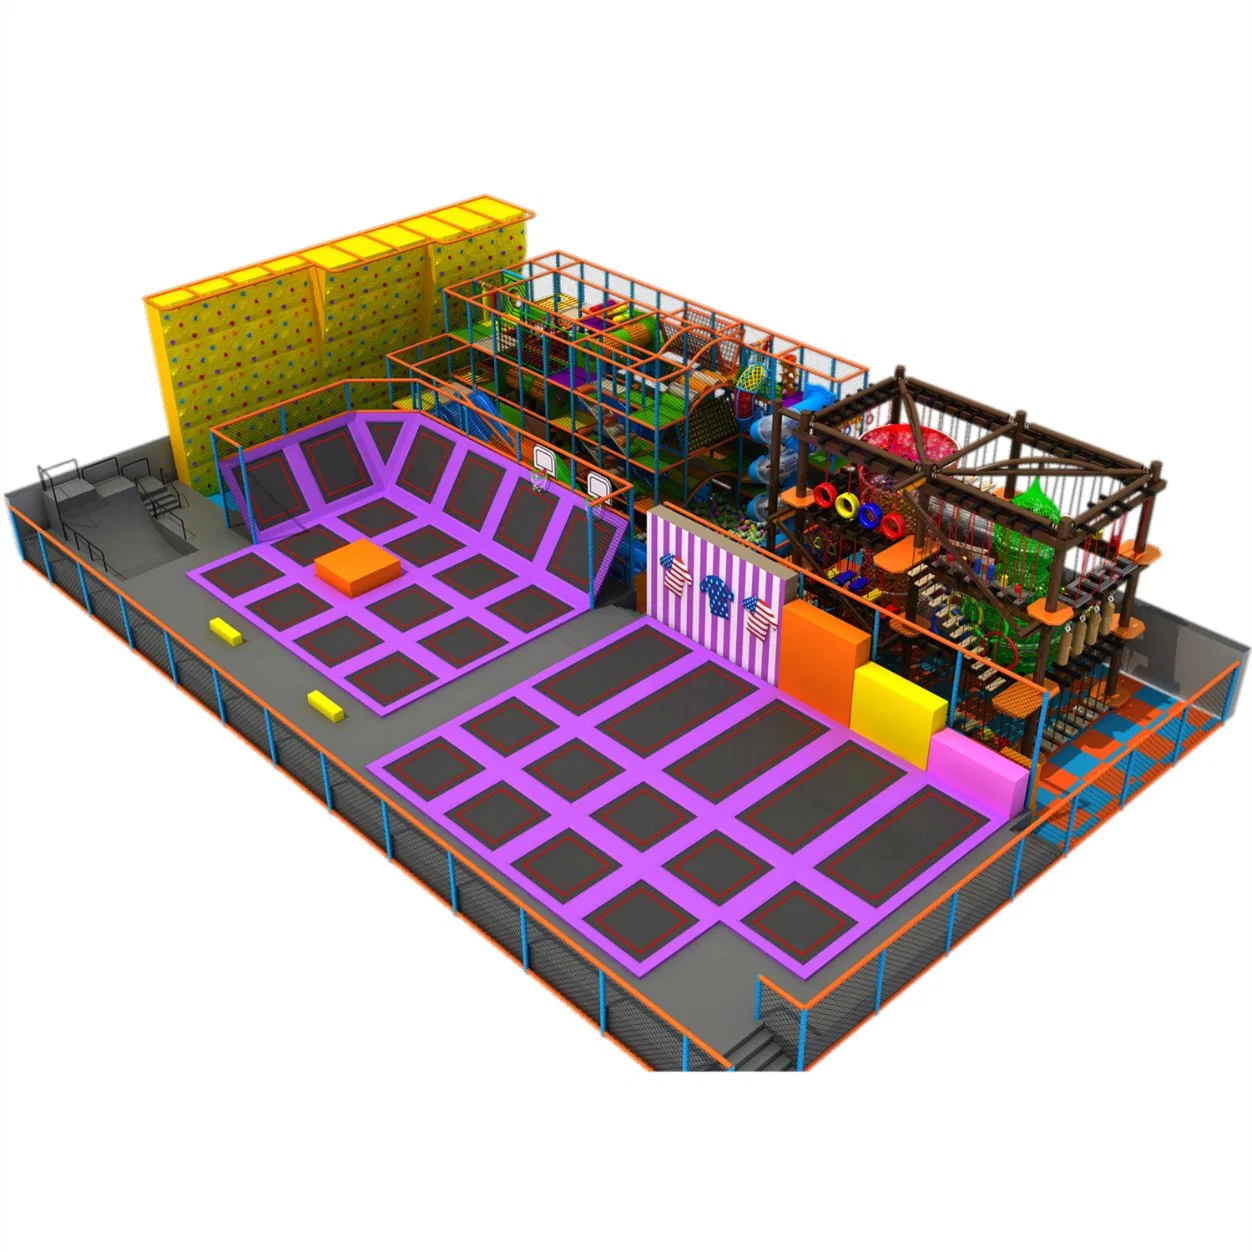 Hersteller Massgeschneiderter Kinderspielplatz Software Ausrüstung Eltern-Kind Spielplatz Slide Trampolin Kombinationsspielzeug